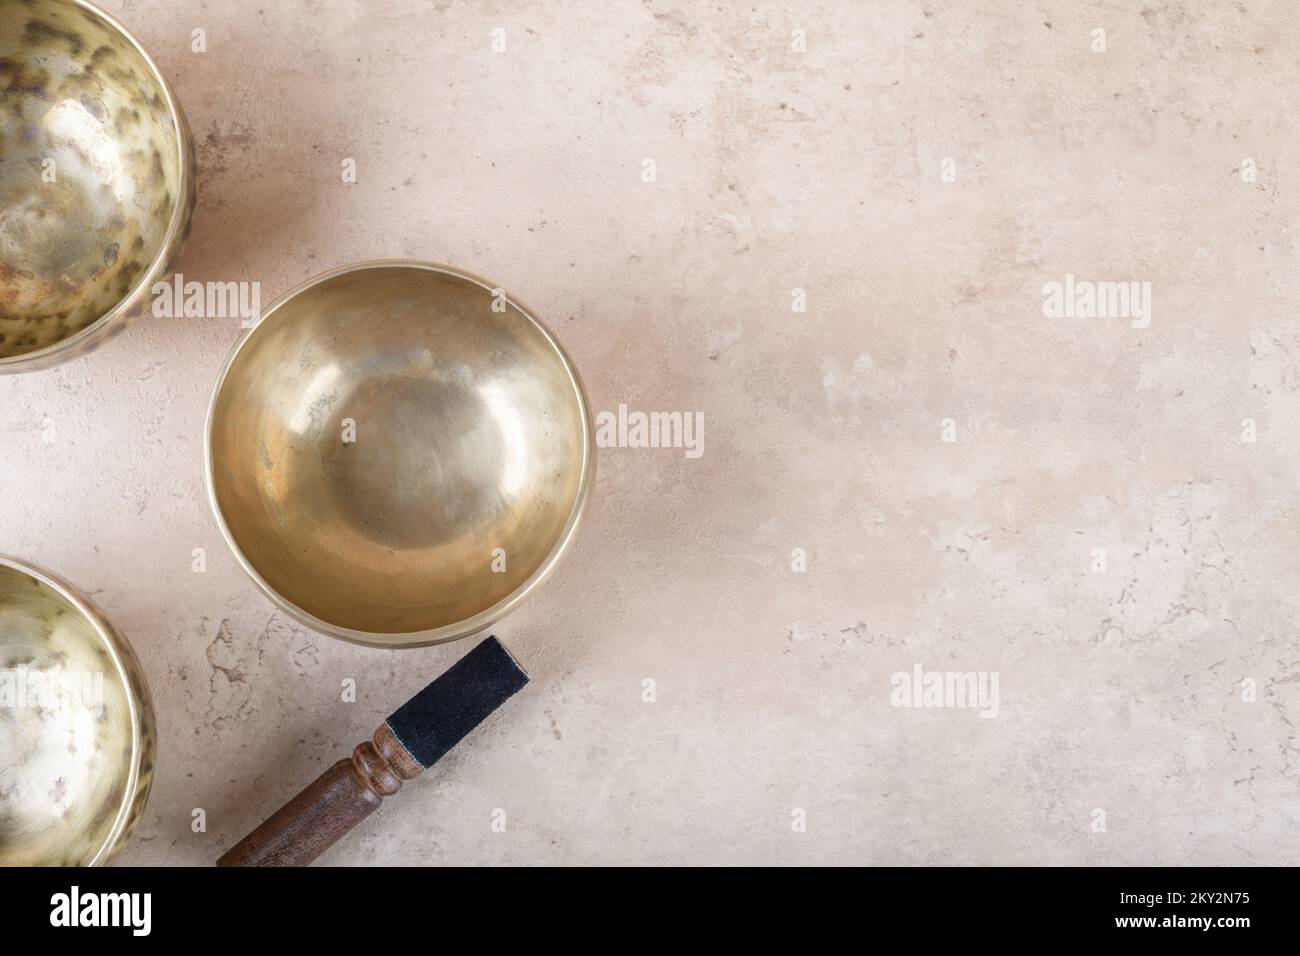 Bols de chant tibétains avec bâton utilisé pendant mantra méditations sur fond de pierre beige, vue de dessus, plat. Instruments de musique pour la guérison du son pour les médicaments Banque D'Images